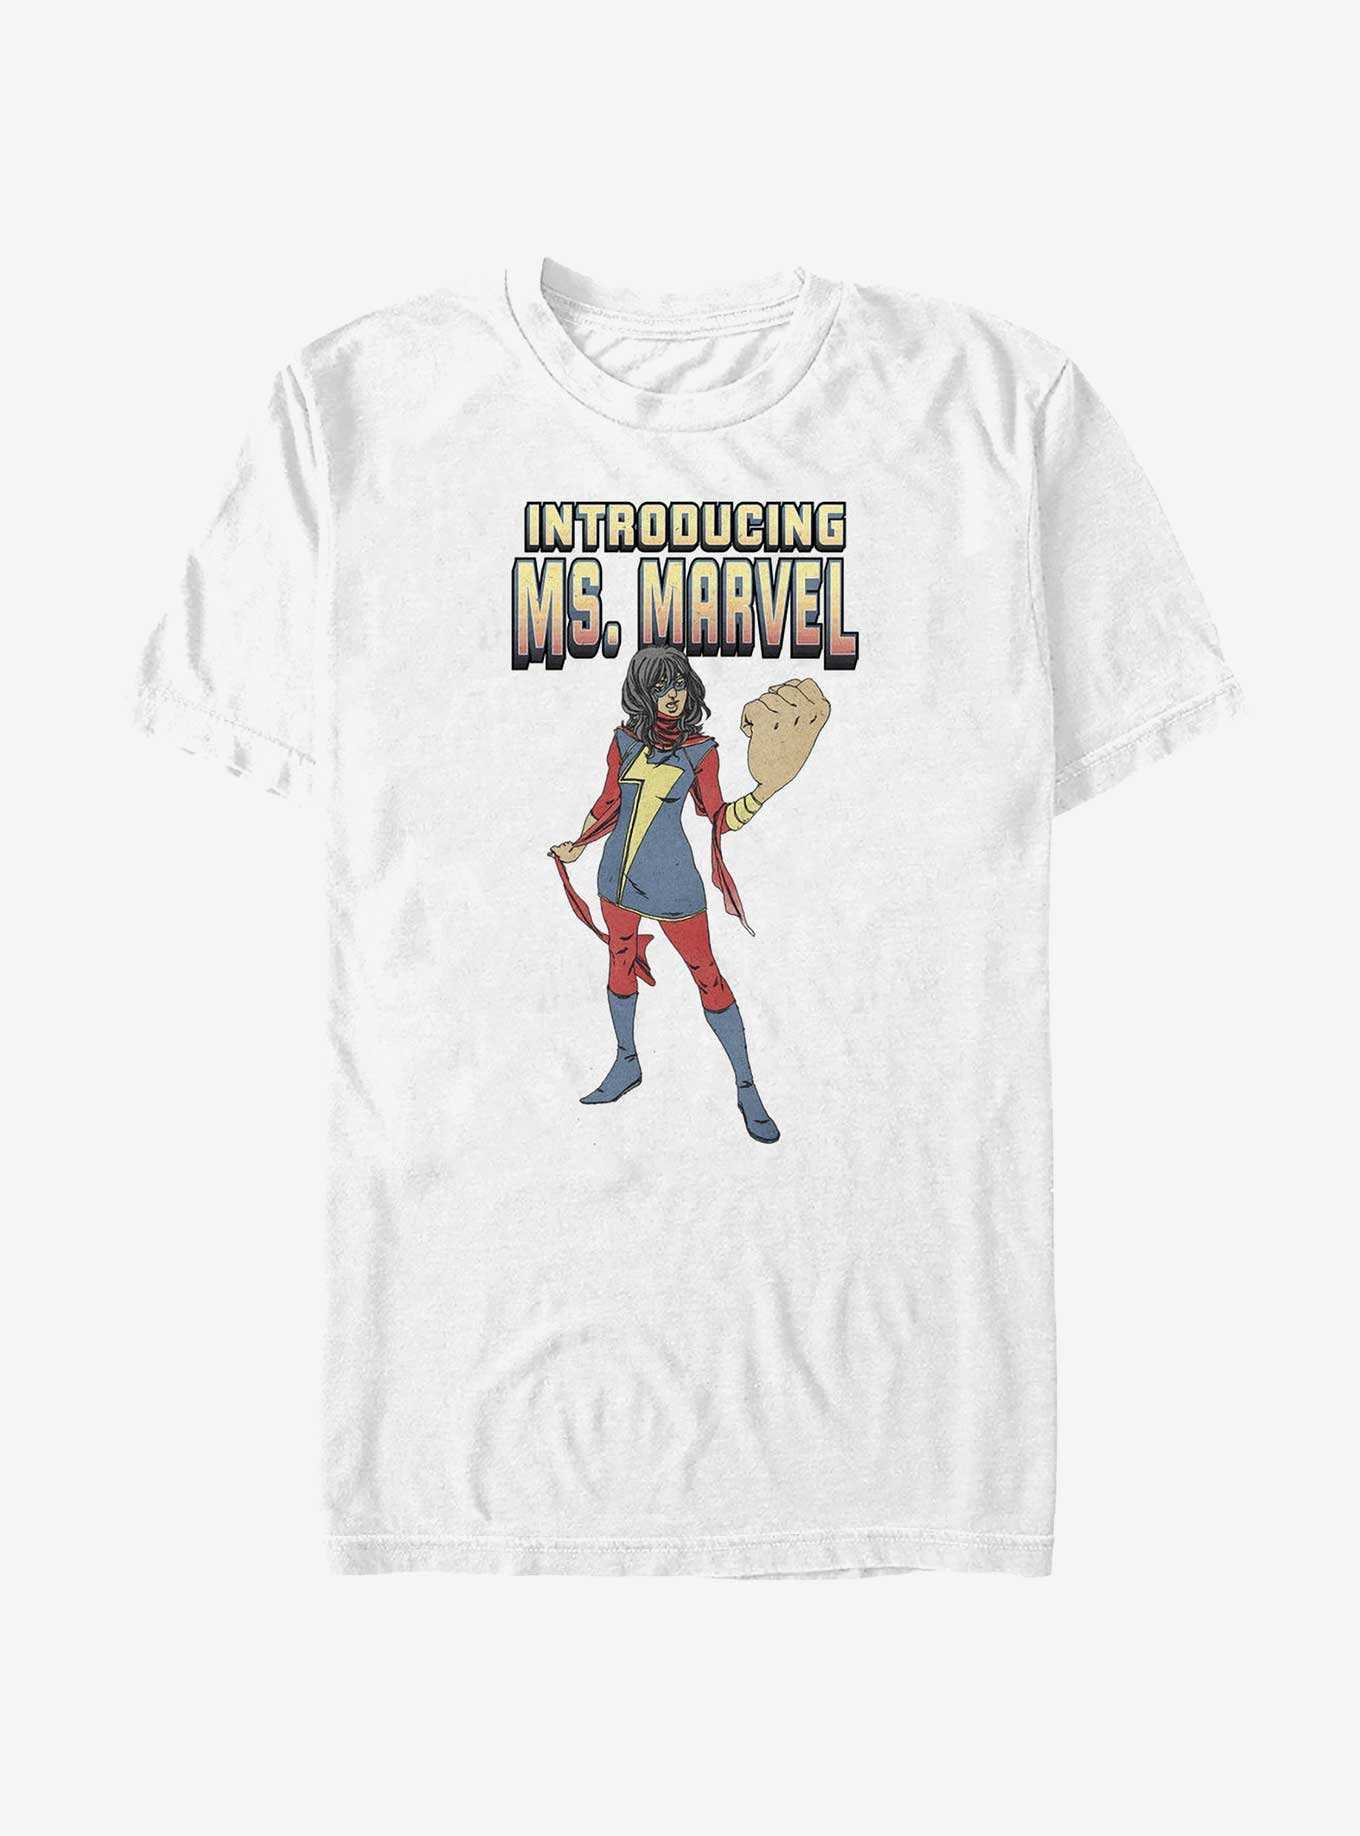 Marvel Ms. Marvel Introduction T-Shirt, , hi-res